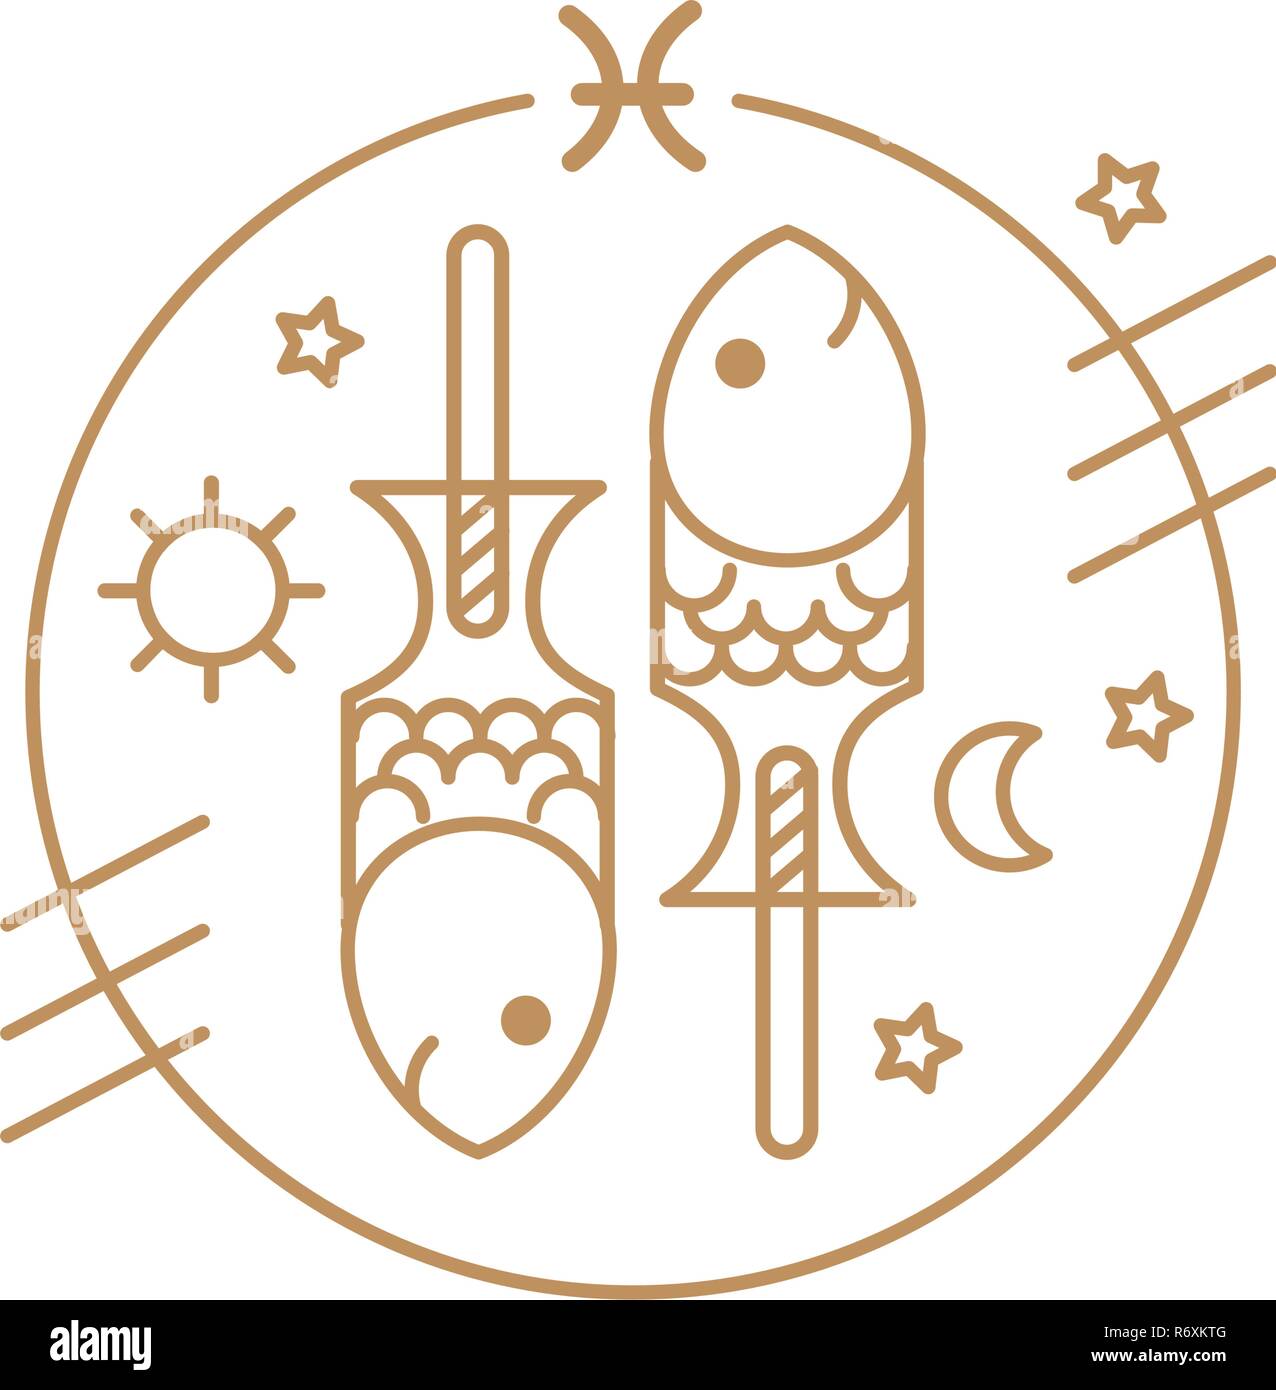 Vektor fische Sternzeichen Waage, Logo oder Bild. Essen Horoskop für Kinder  Stock-Vektorgrafik - Alamy